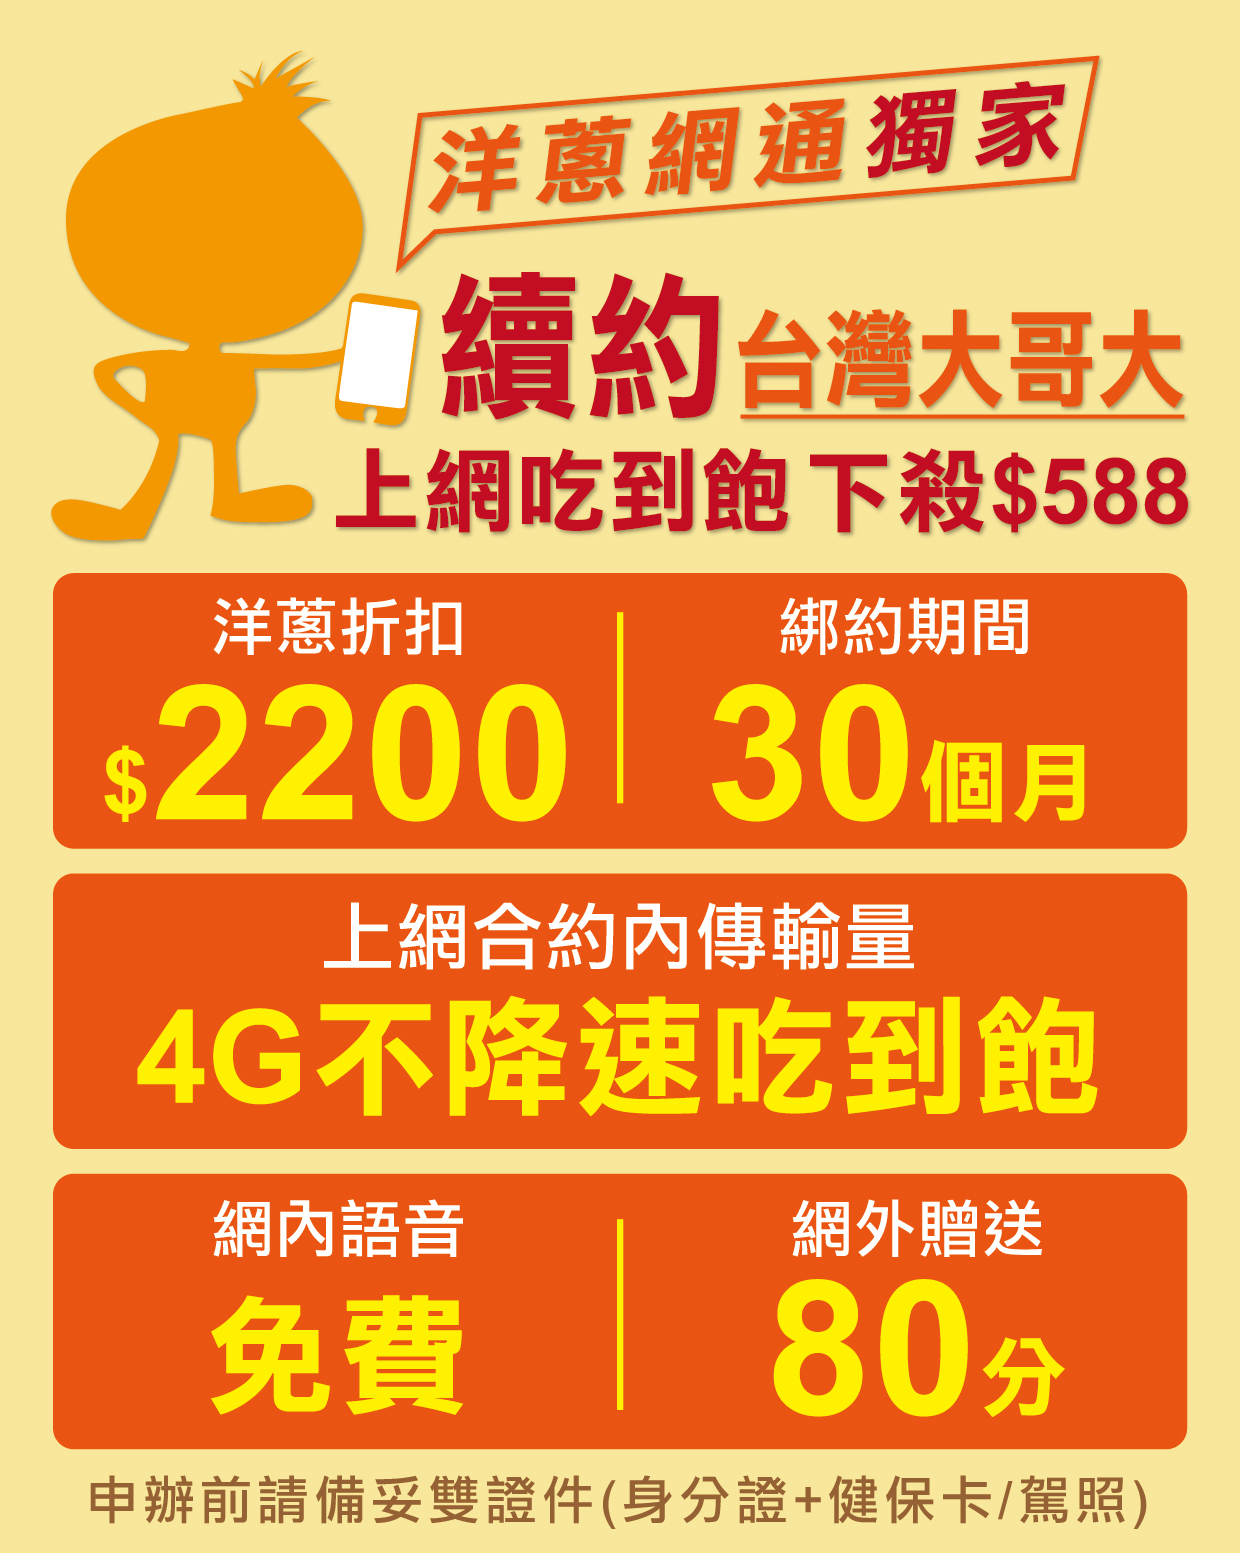 續約優惠 台灣大哥大4g上網吃到飽只要588元 洋蔥快訊 洋蔥網通mobile 挑戰市場手機最低價 手機專賣店